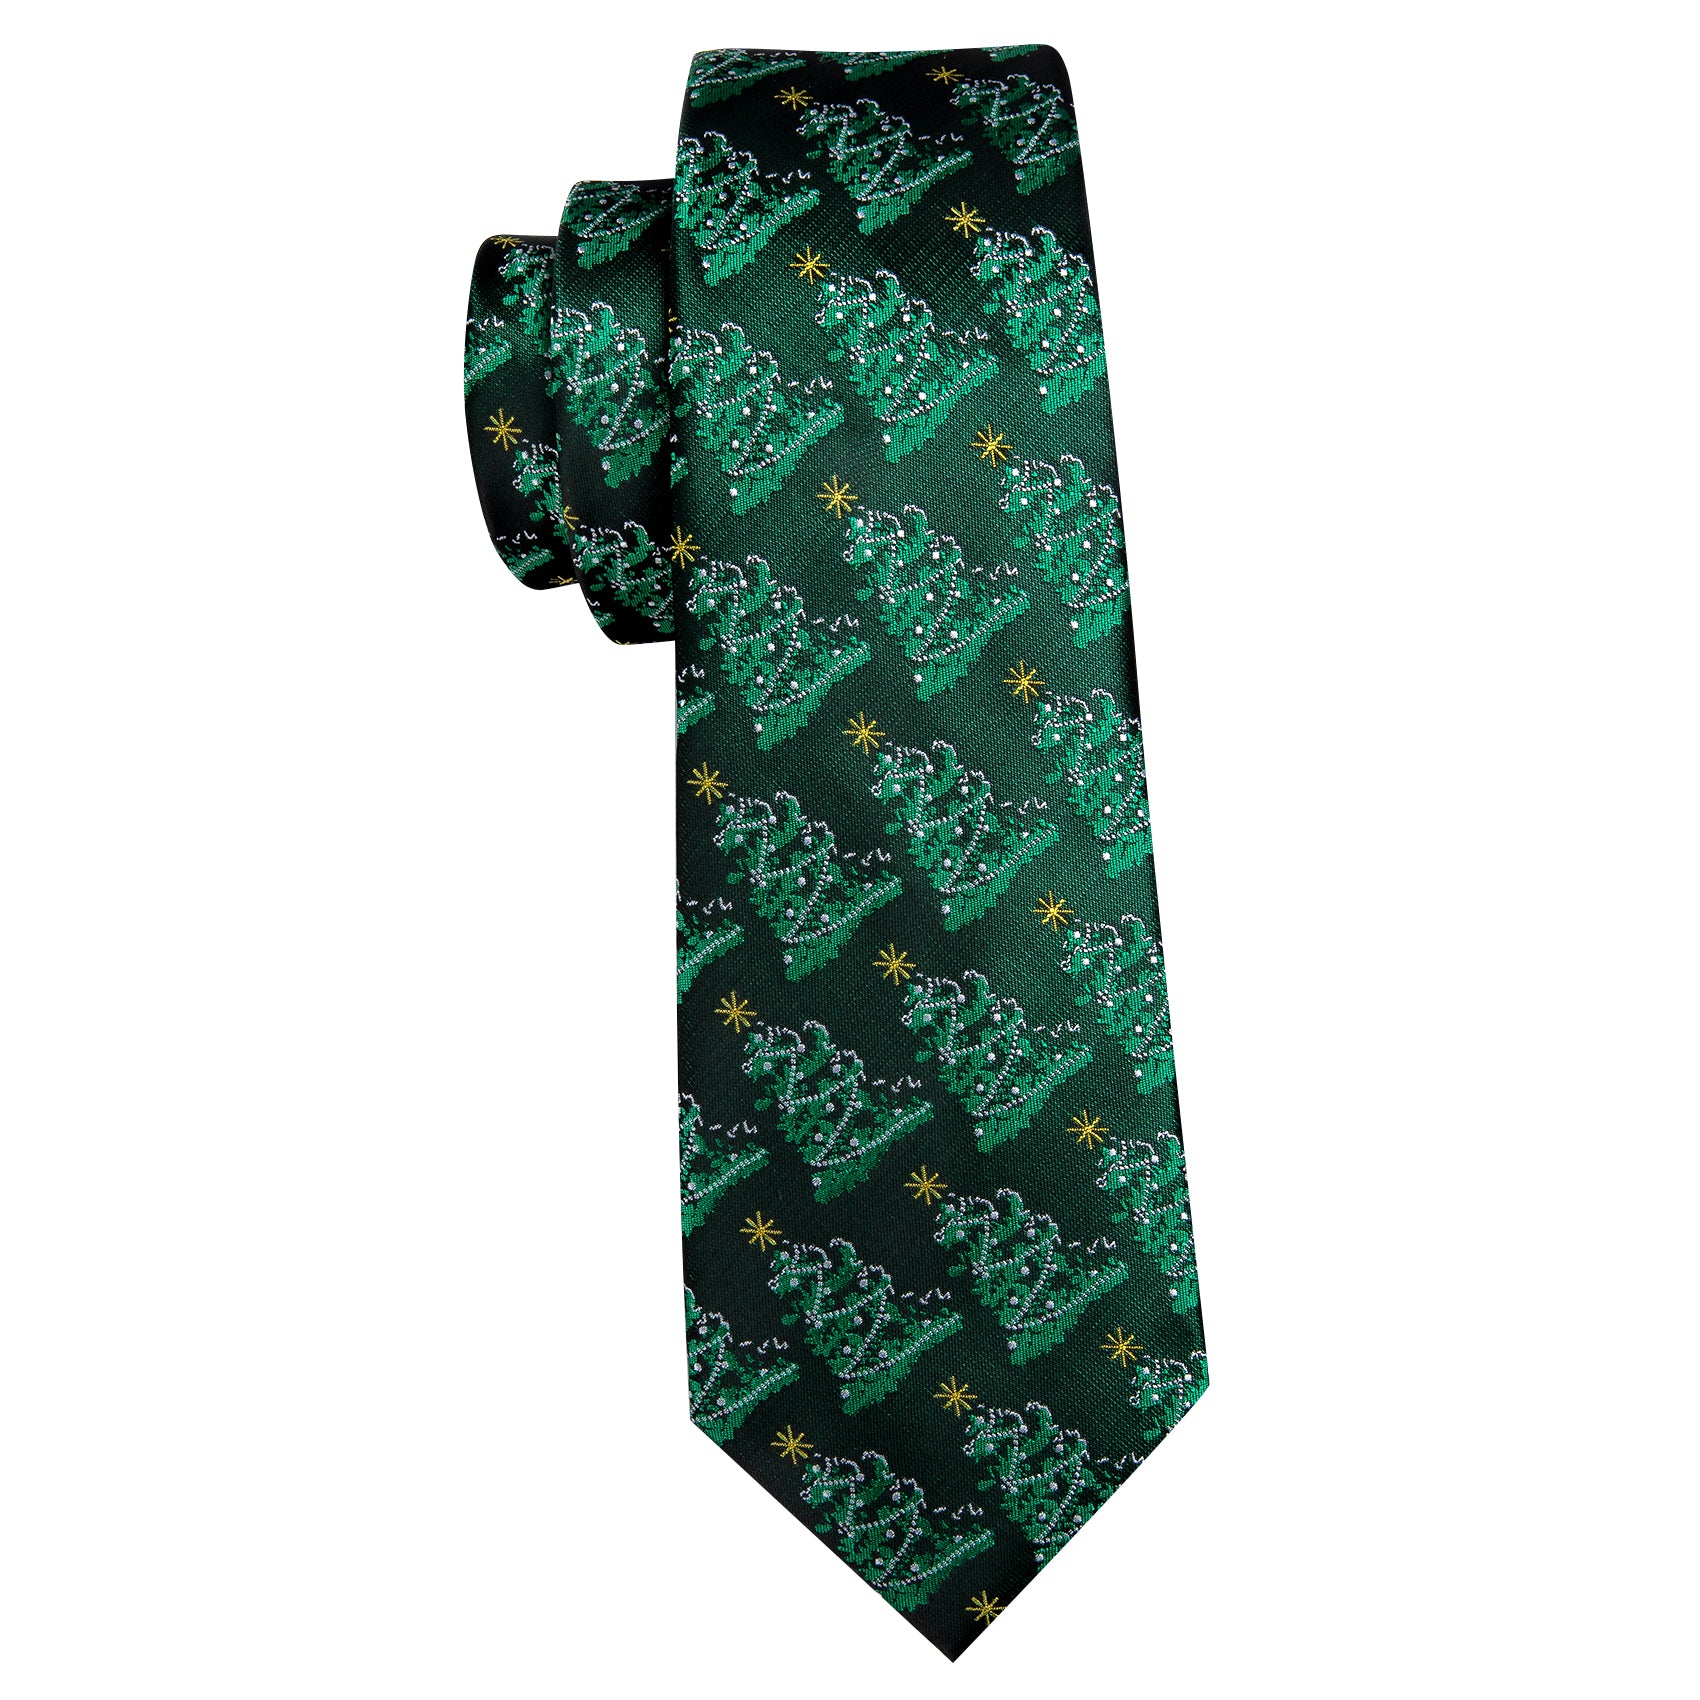 Barry Wang Christmas Tree Green Floral Silk Tie Handkerchief Cufflinks Set